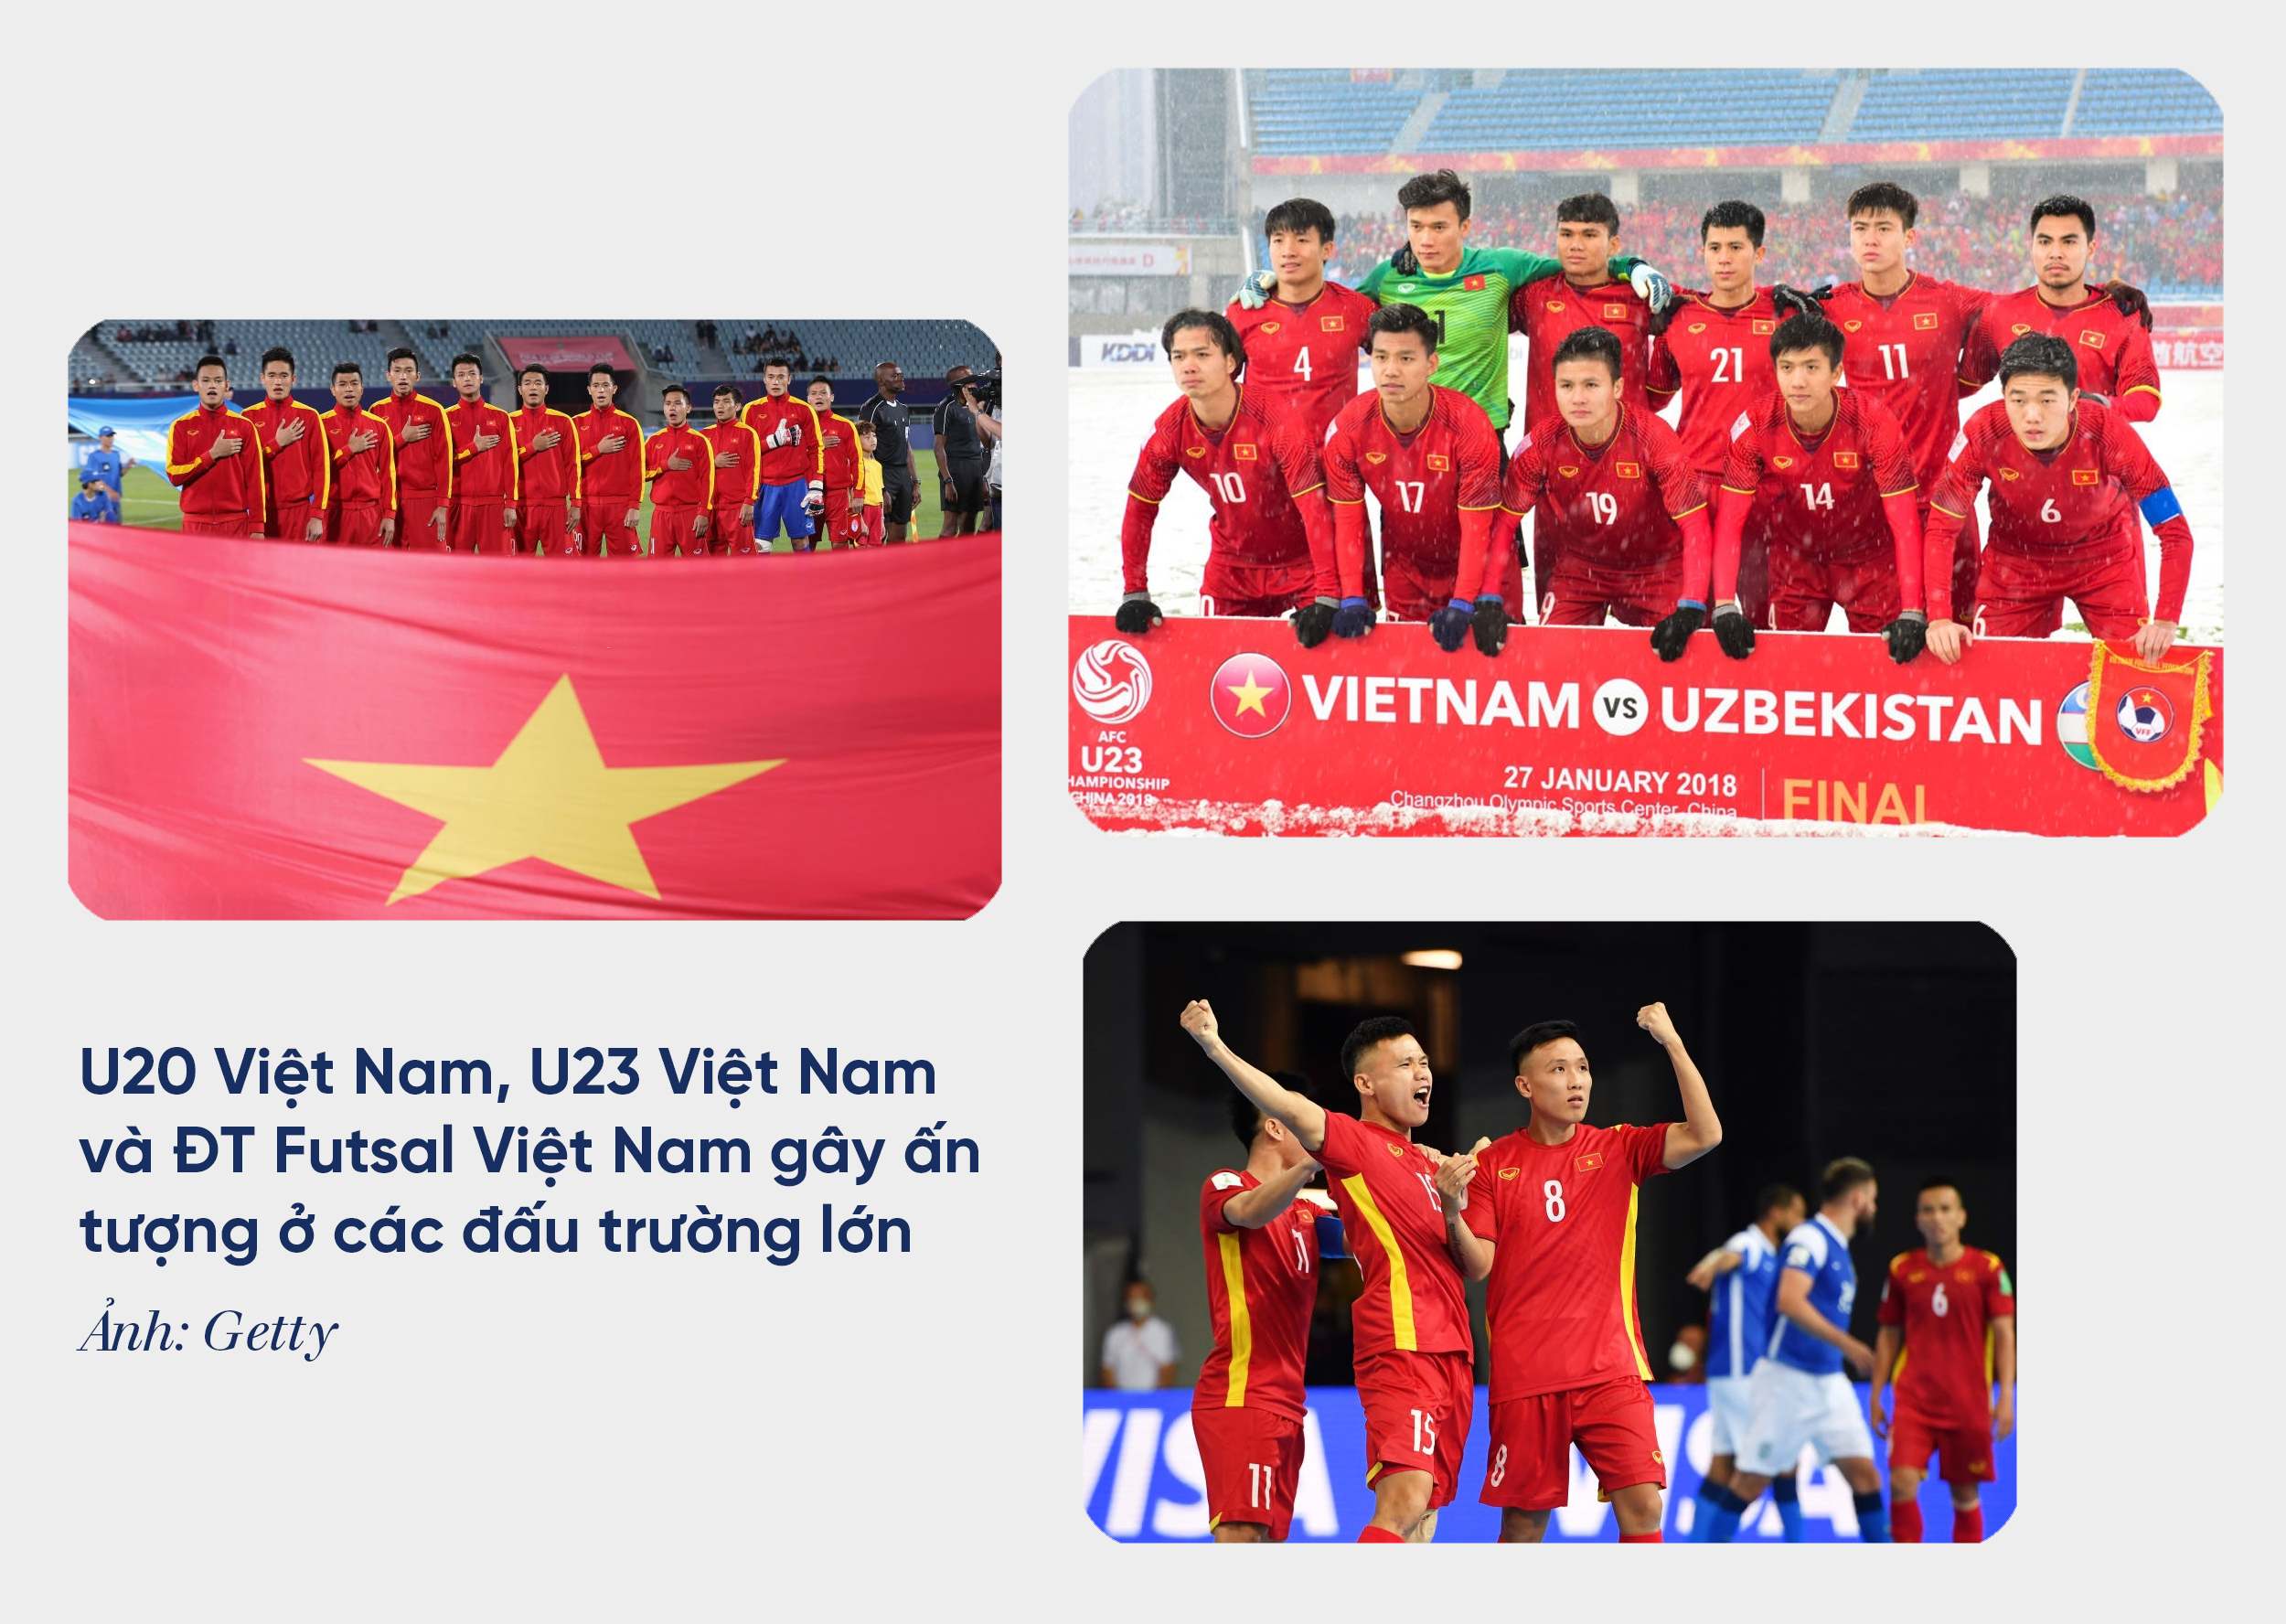 ĐT Việt Nam bóng đá Trung Quốc ảnh tôi yêu Việt Nam: Bóng đá Việt Nam chúng ta đang tạo nên kỳ tích! Hãy tới với tôi để cùng nhau hòa mình trong không khí sôi động của trận đấu quan trọng này. Tại đây sẽ có những bức ảnh đầy cảm xúc về tuyển bóng đá Việt Nam và làn sóng cảm hứng tuyệt vời dành cho môn thể thao vua.